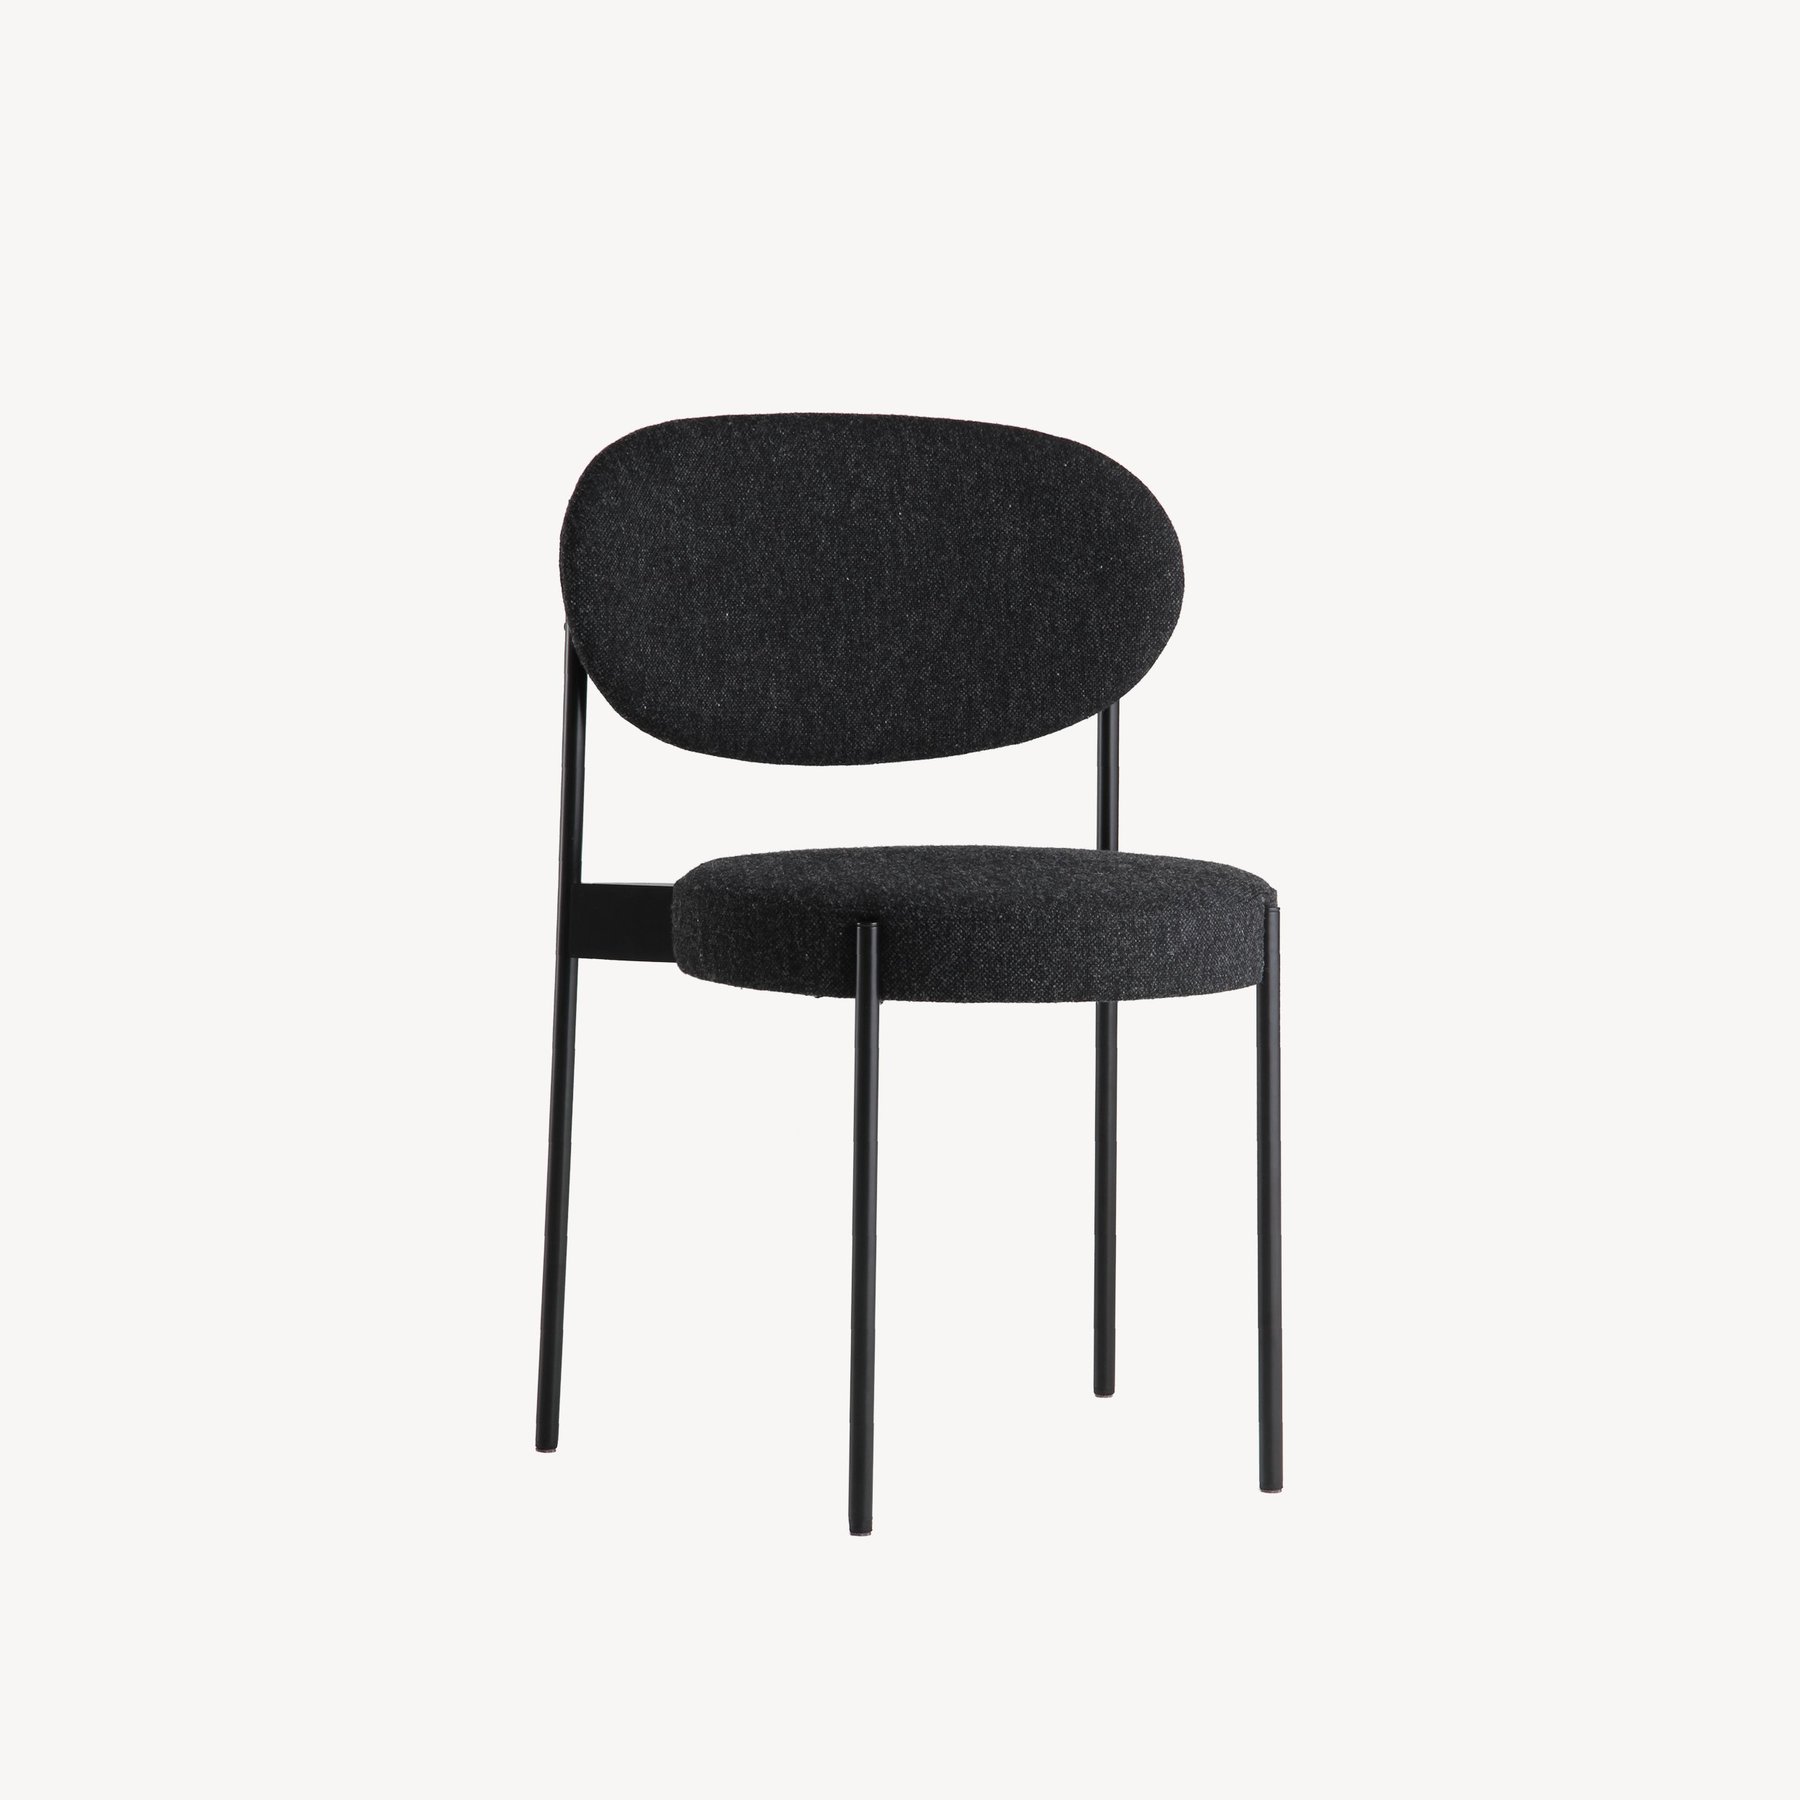 丹麦家具Verpan的SERIES 430 CHAIR BLACK FRAME 餐椅  主图